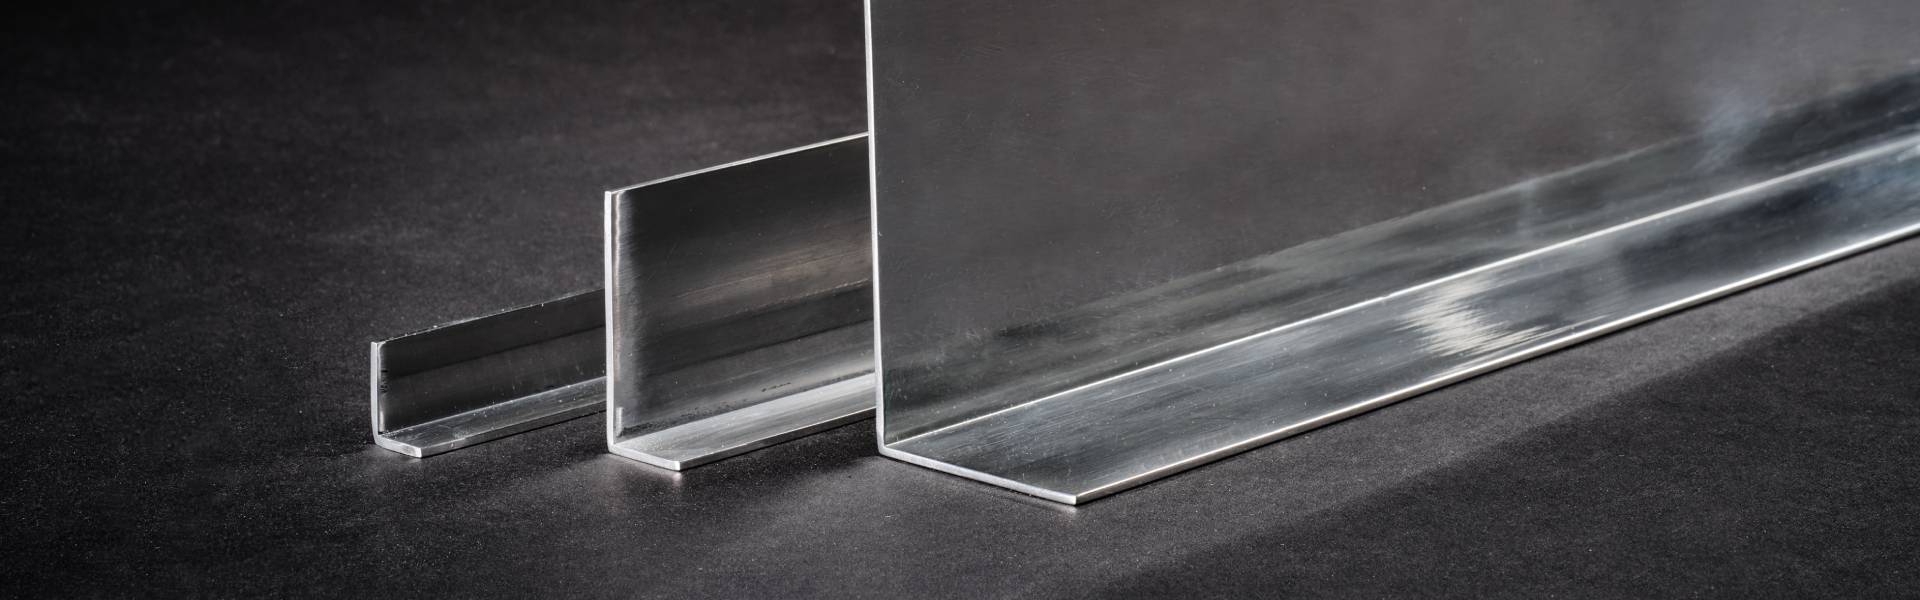 Profili in Alluminio ad Elle - Vendita alluminio: profili, tubi